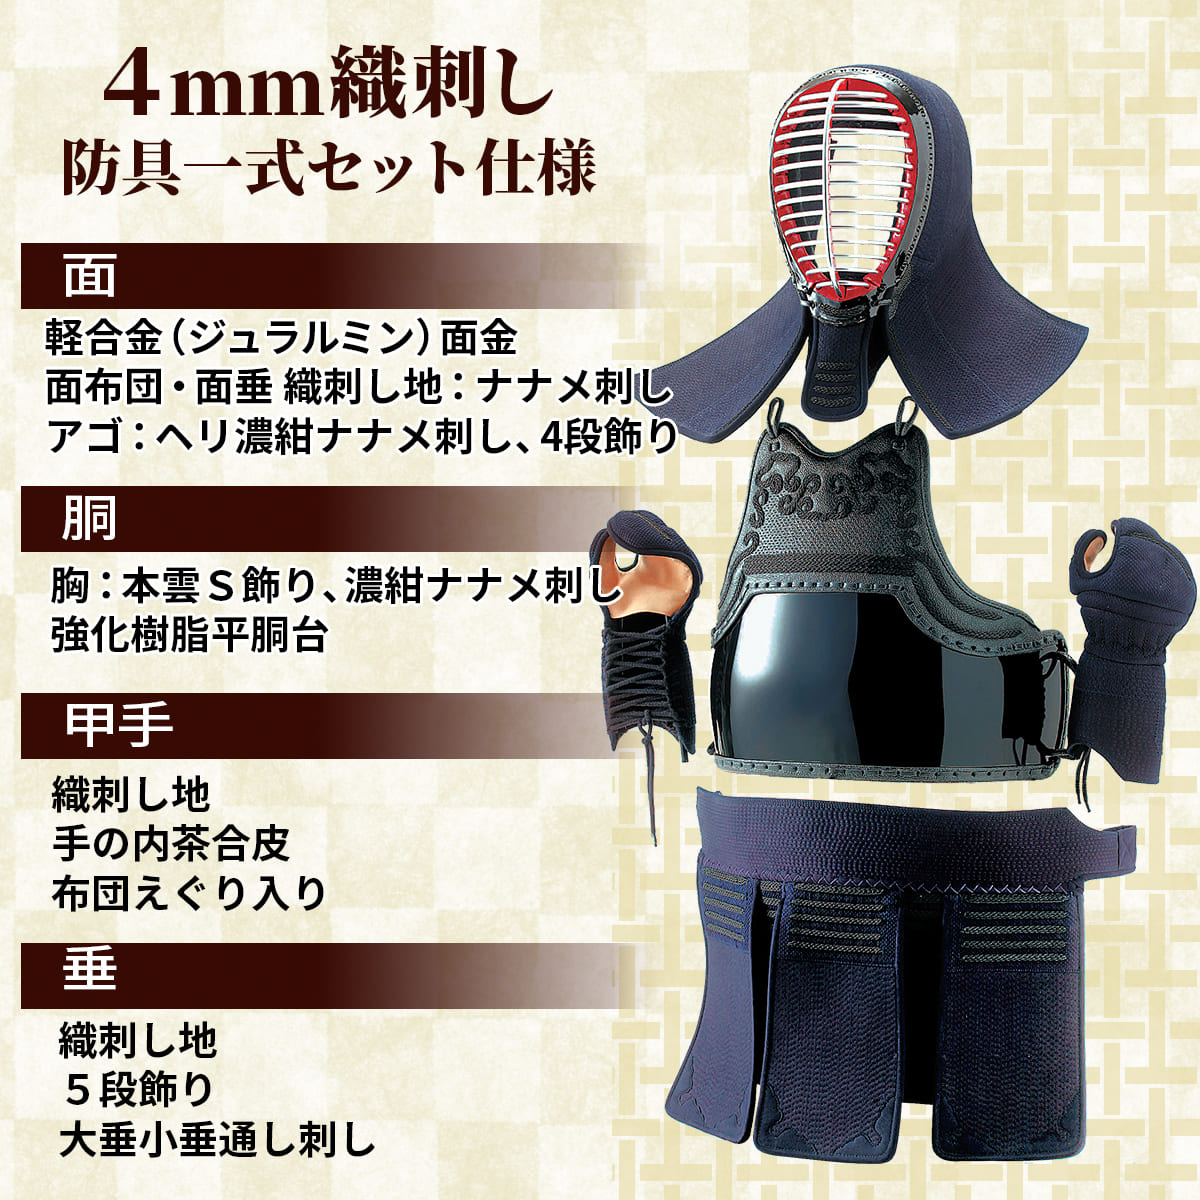 4mm 織刺 実戦型 防具セット［n-bg-4o］ – 西日本武道具